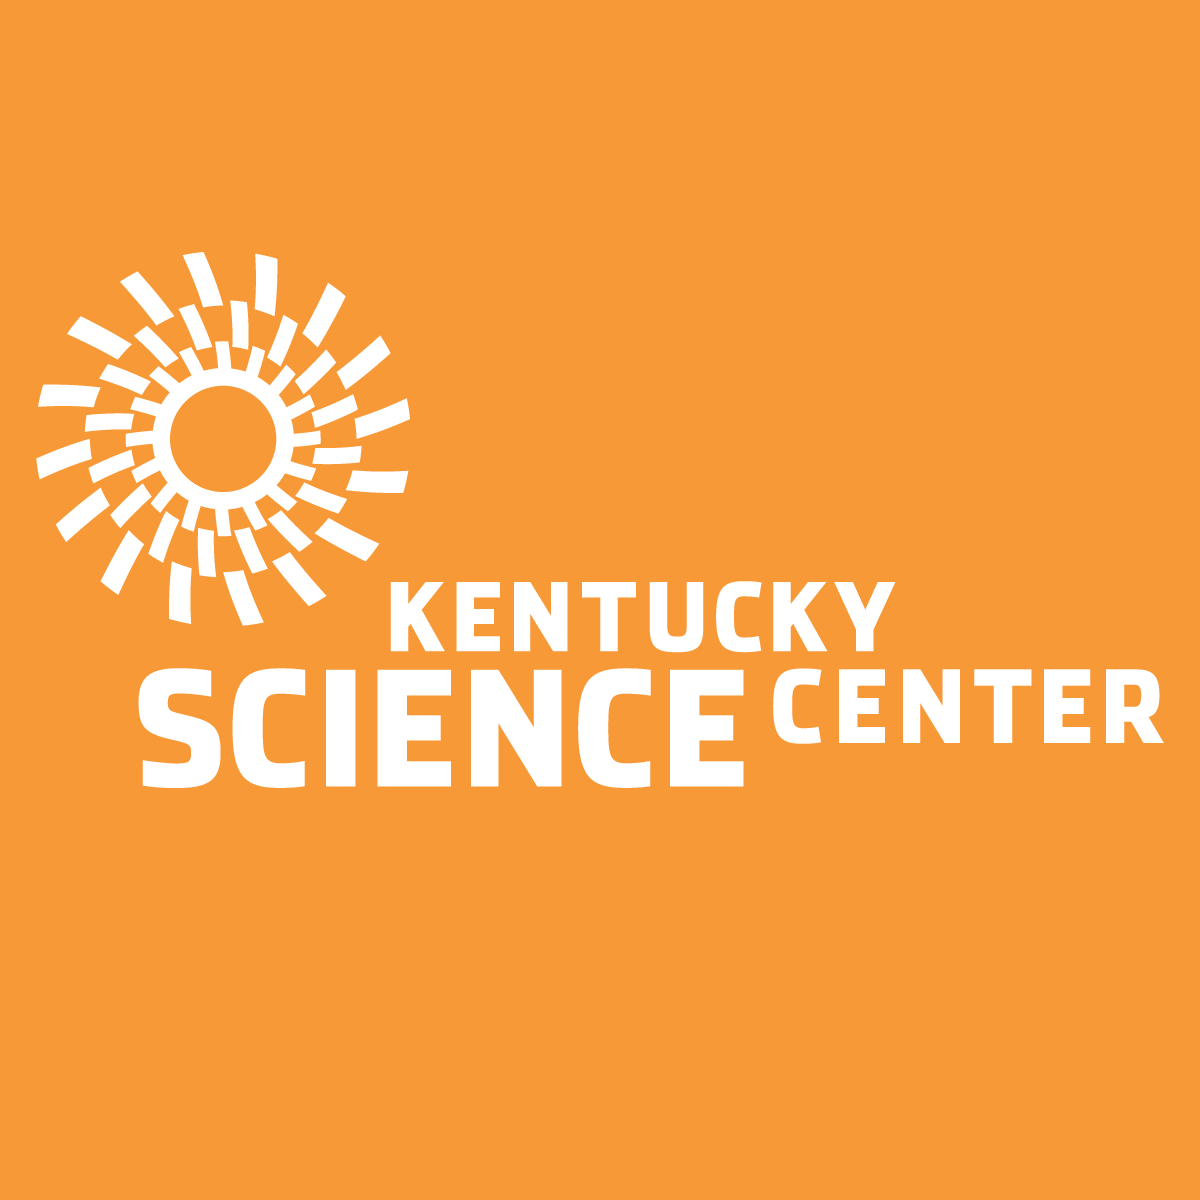 Kentucky Science Center - Logo